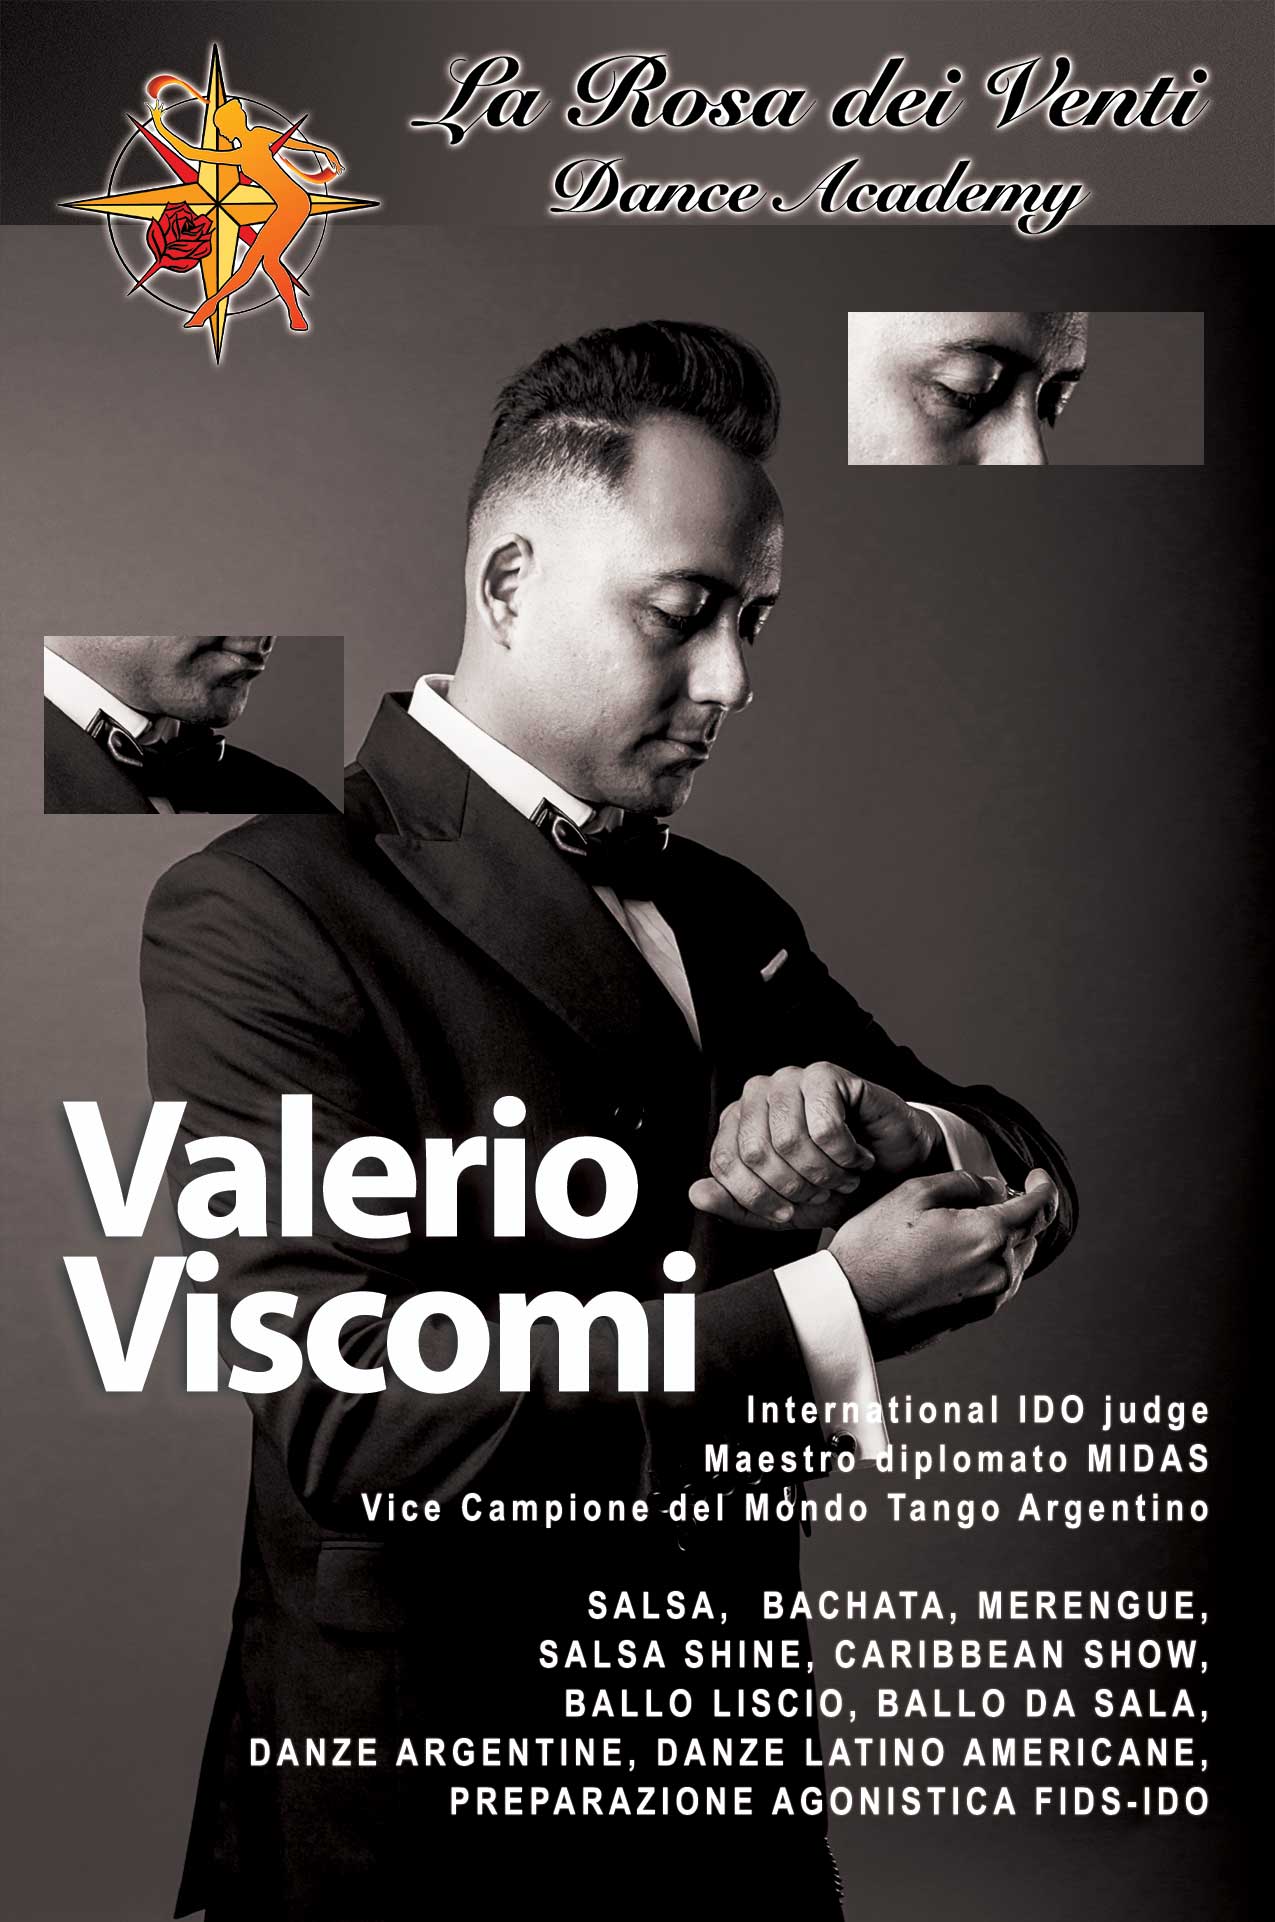 Valerio Viscomi Vice Campione del Mondo Tango Argentino La Rosa dei Venti Dance Accademy